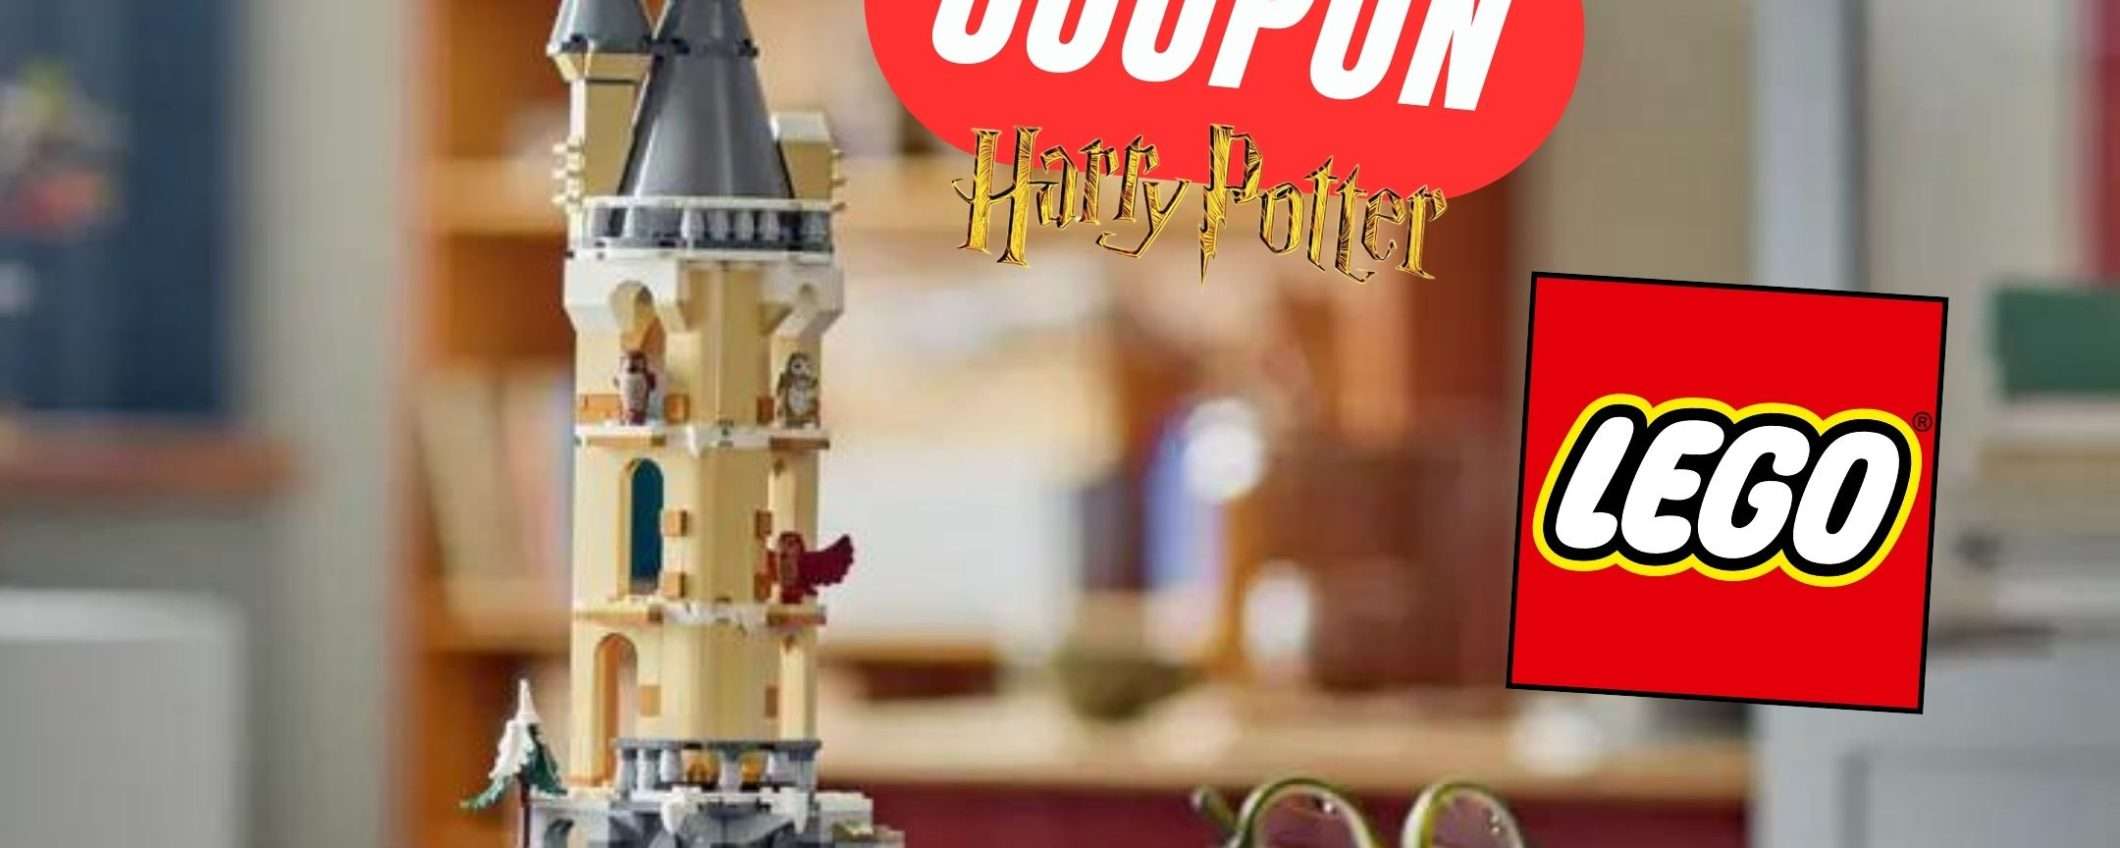 Grazie a questo COUPON avrai un pezzo di Hogwarts in versione LEGO a pochissimo!